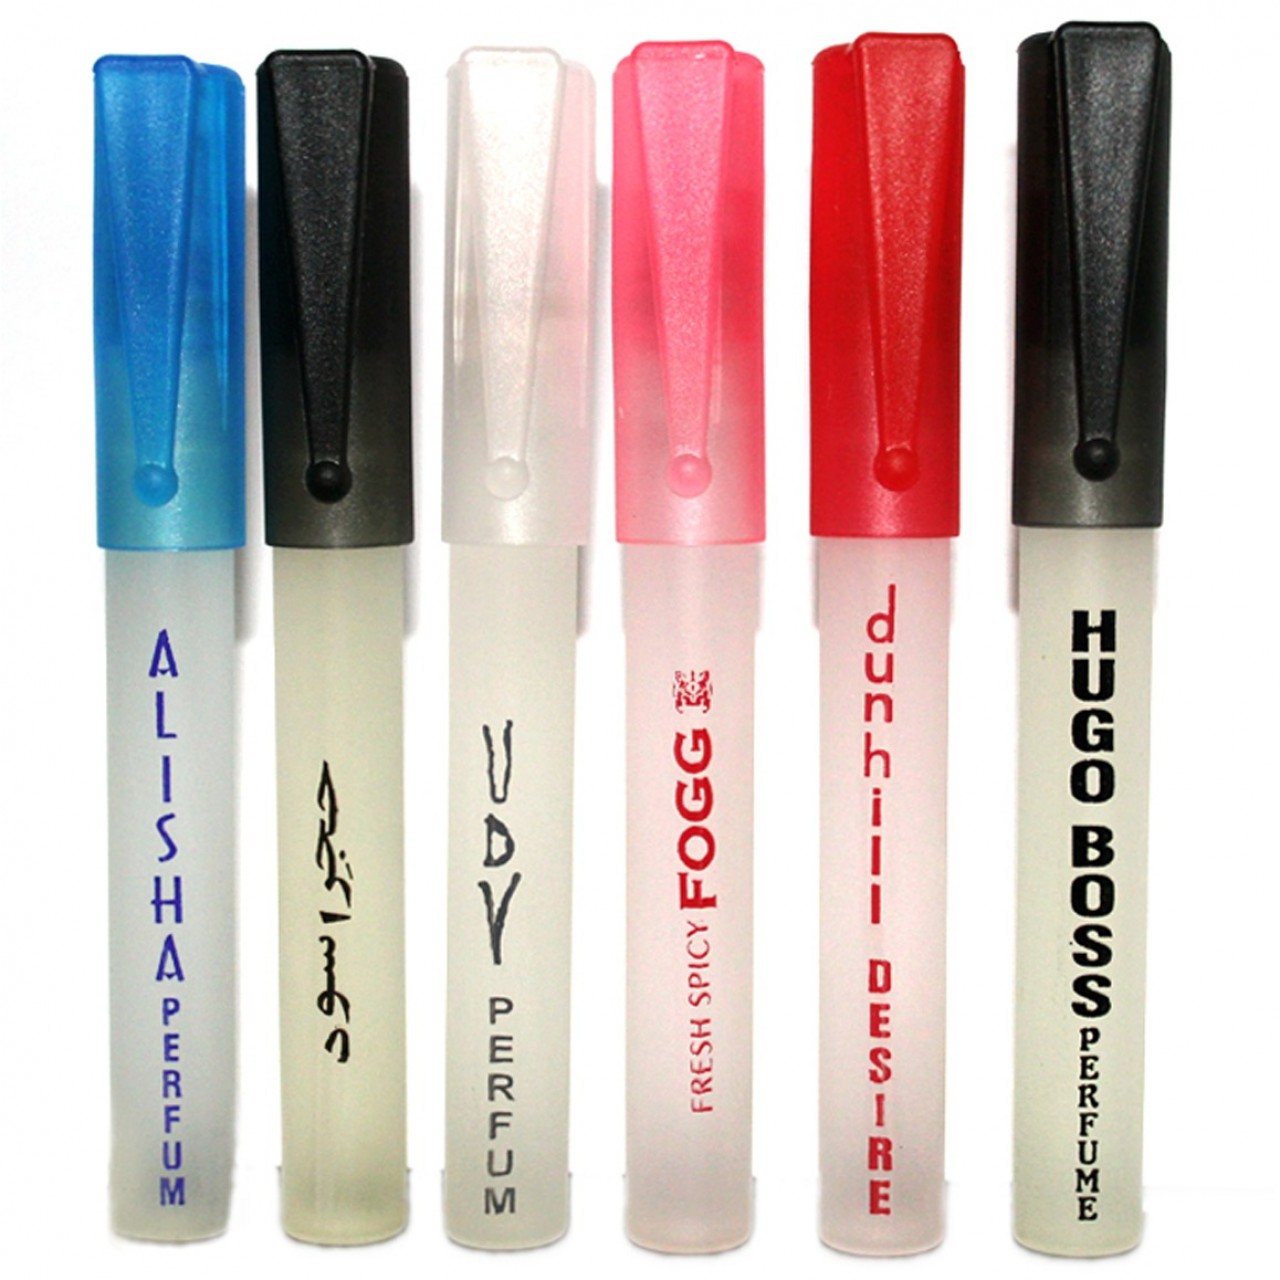 Pack of 6 - Multi Fragrances Pen Perfume for Unisex - 25 ml Each